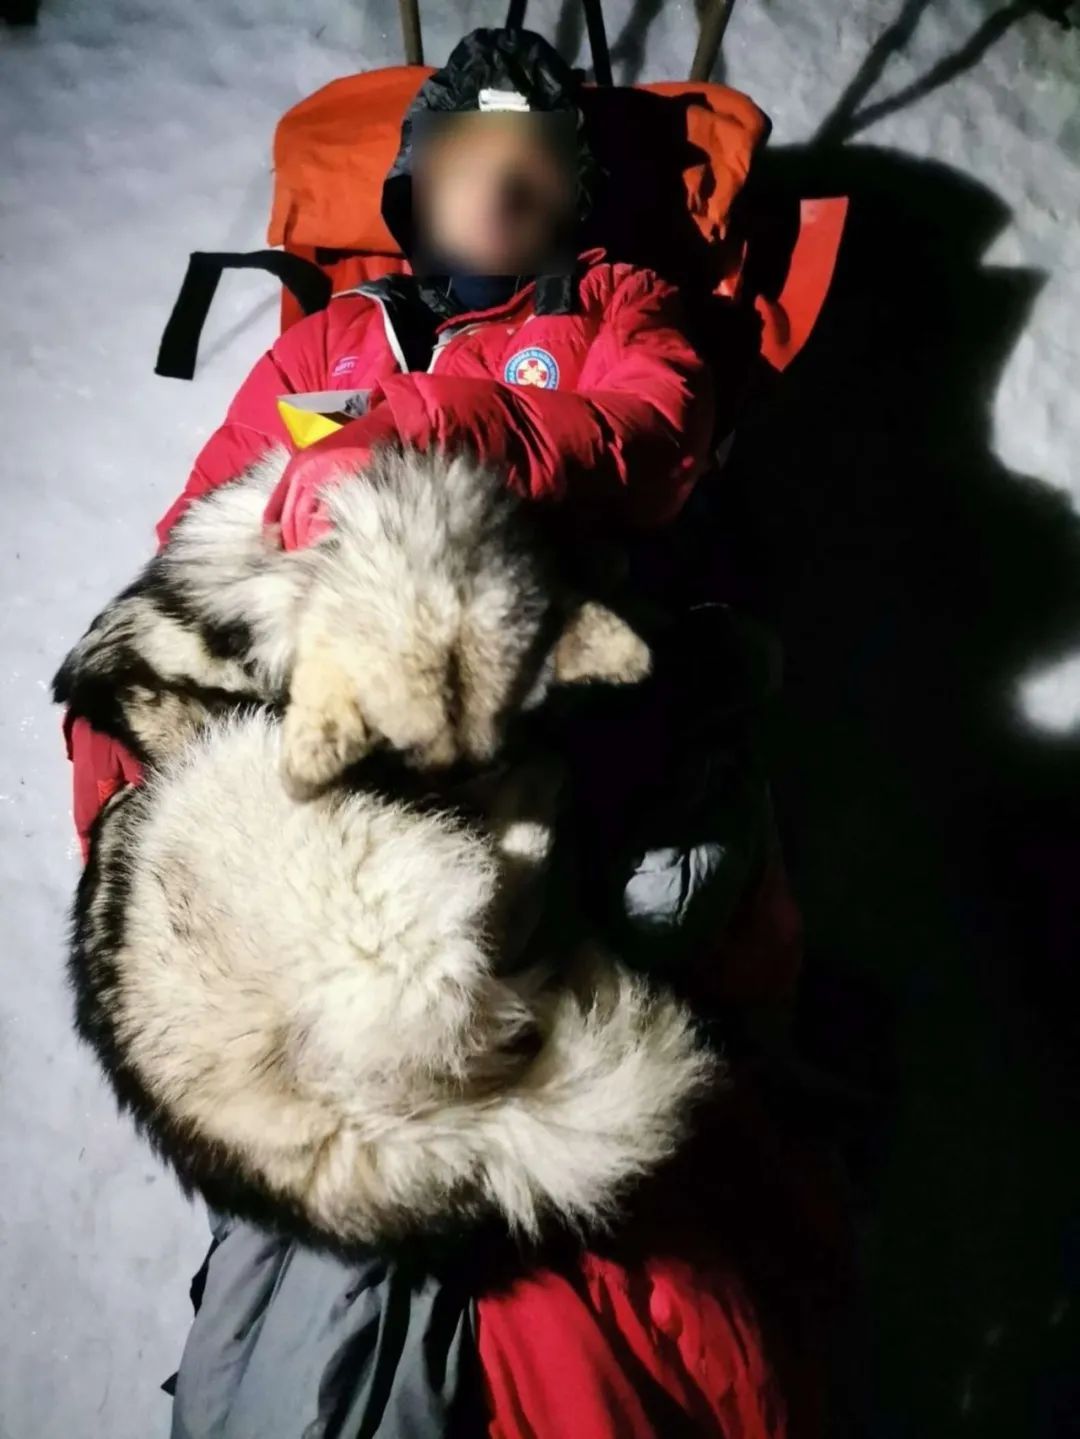 主人雪中爬山时遇险，随行的狗狗坚守在旁帮他取暖，直到救援到来